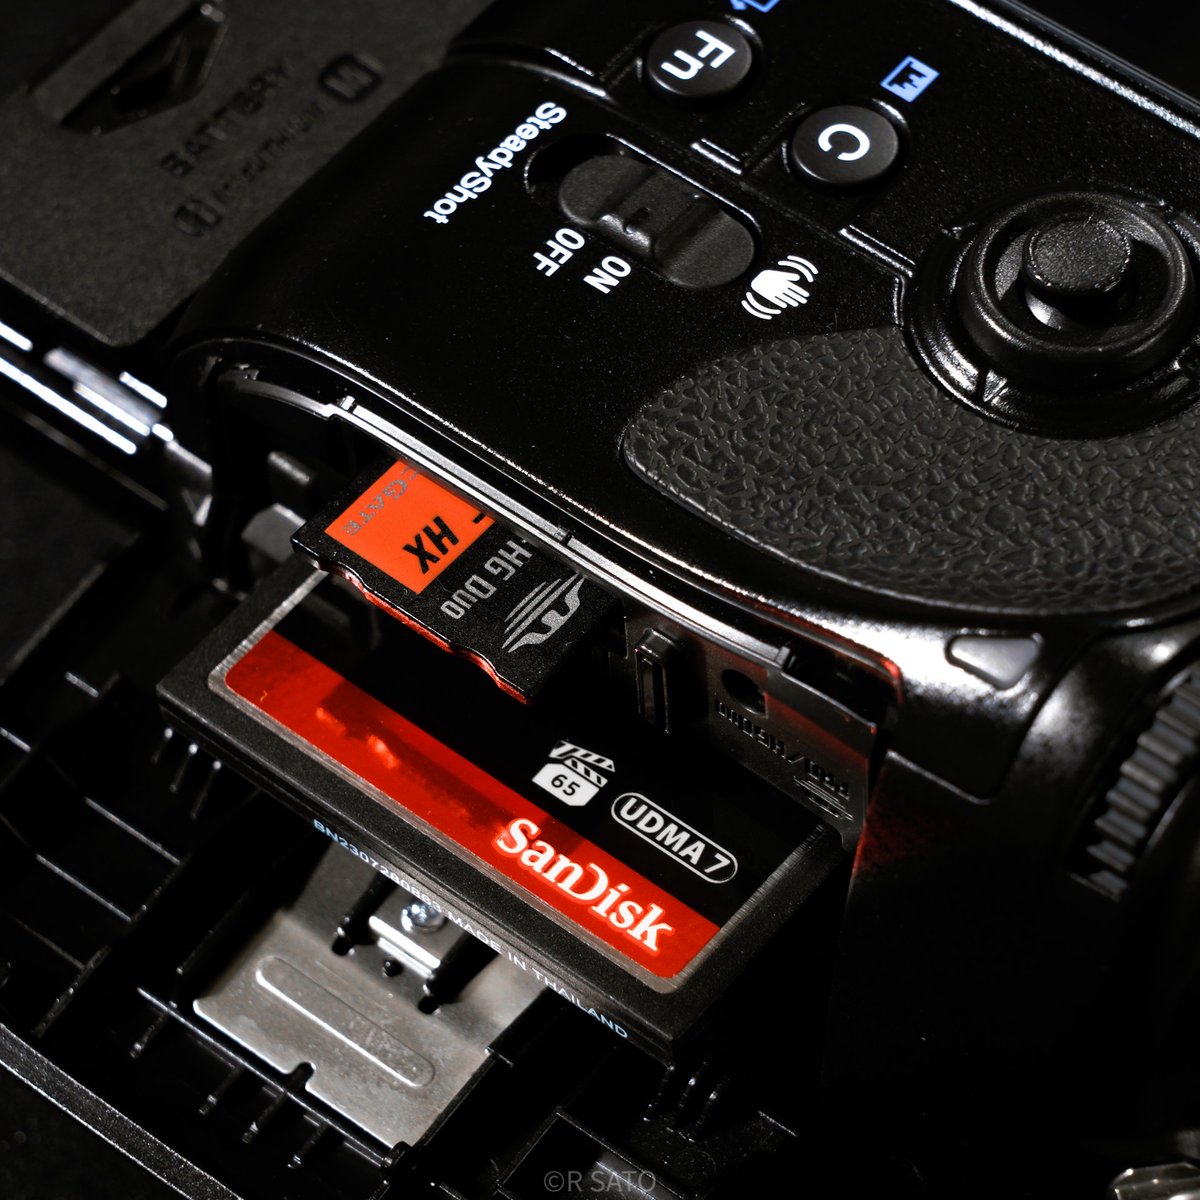 準備完了 / Ready for New Camera
#SonyAlpha #A900 #Sandisk #instagram instagram.com/p/C6k3ebGrrUw/